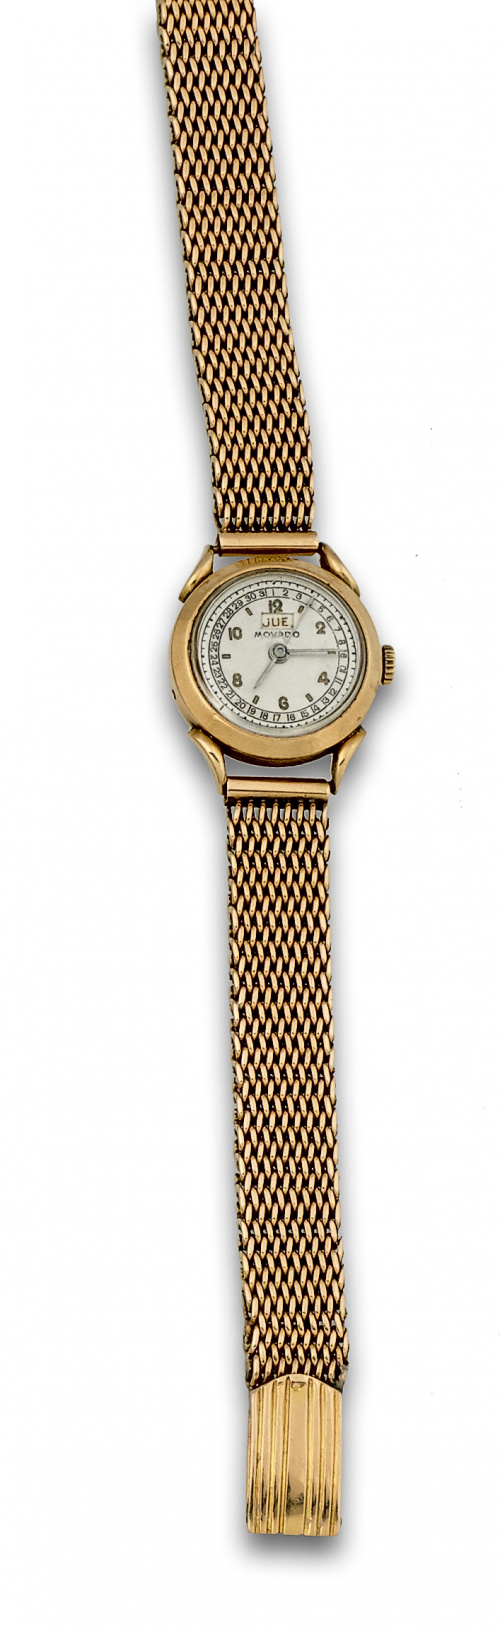 Reloj de MOVADO con calendario años 40 ,y pulsera en malla 